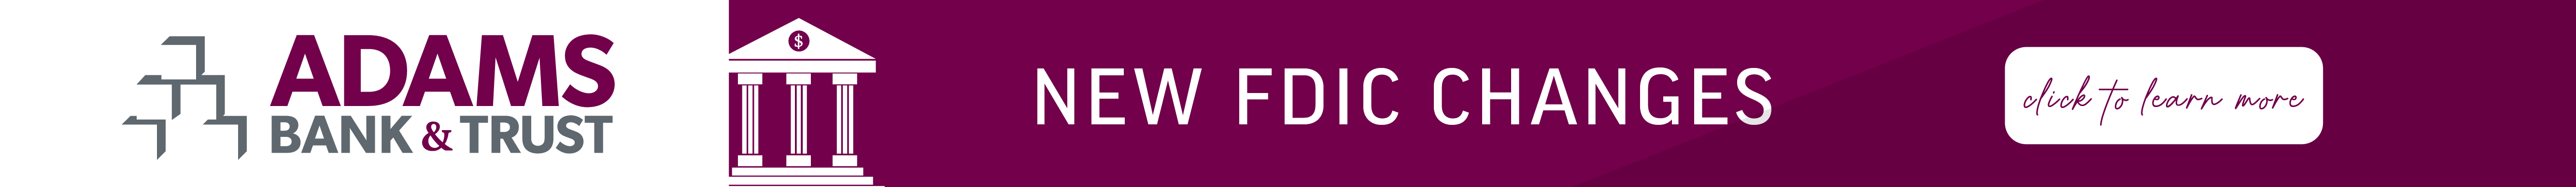 New FDIC Changes